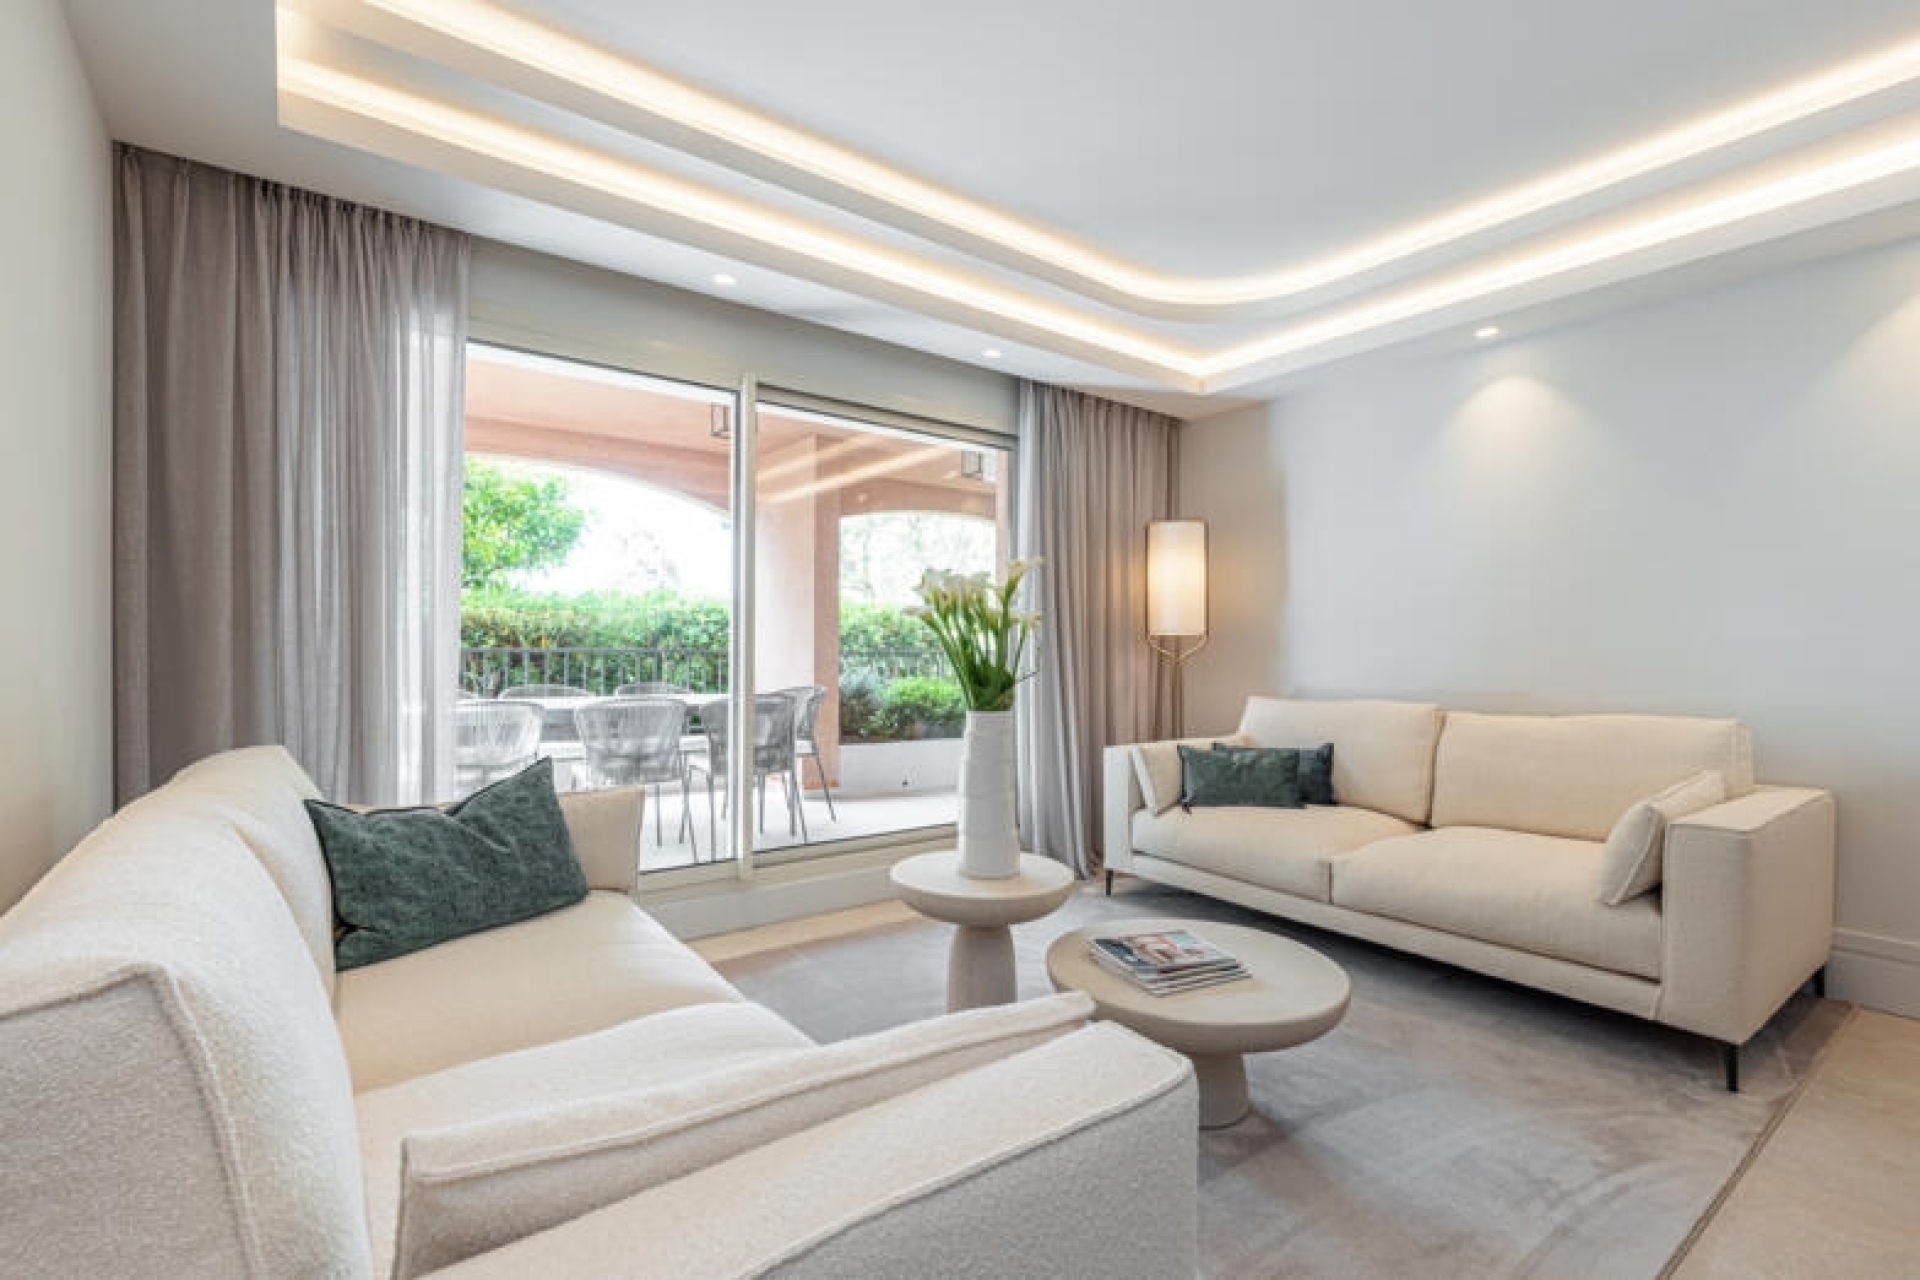 Dotta Appartement de 4 pieces a vendre - GRAND LARGE - Fontvieille - Monaco - img10